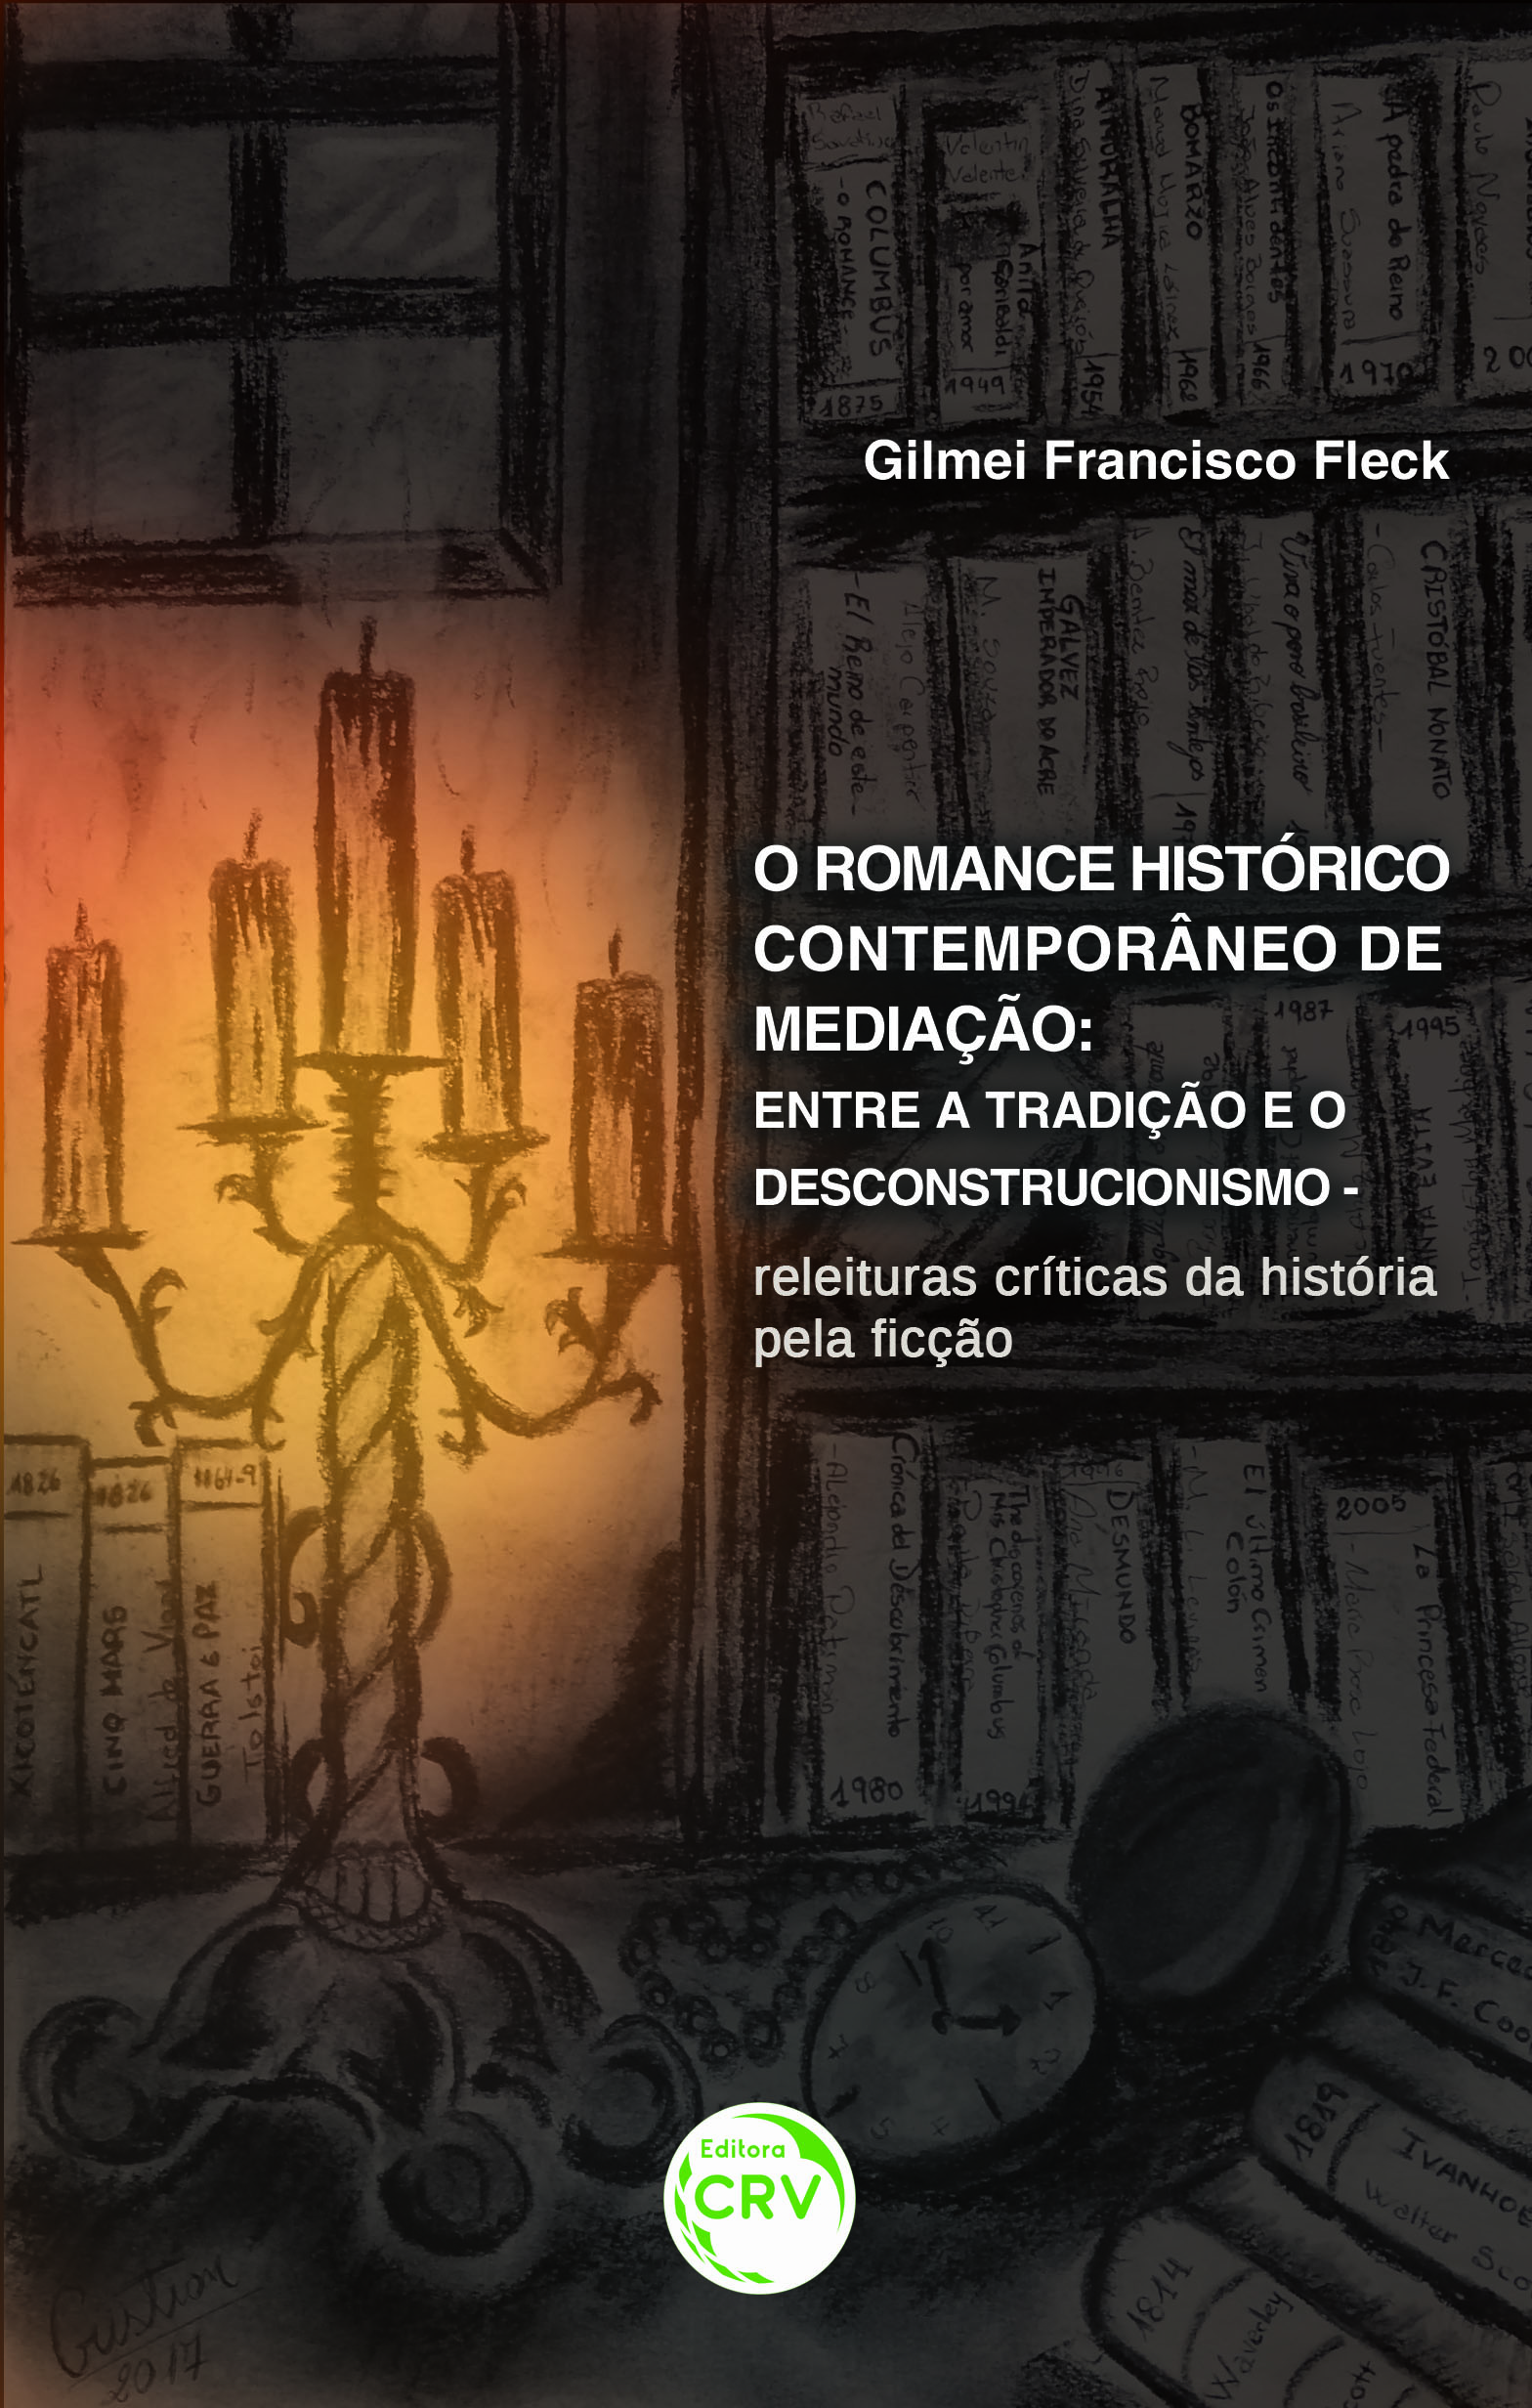 Capa do livro: O ROMANCE HISTÓRICO CONTEMPORÂNEO DE MEDIÇÃO:<br> entre a tradição e o descontrucionismo – releituras críticas da história pela ficção